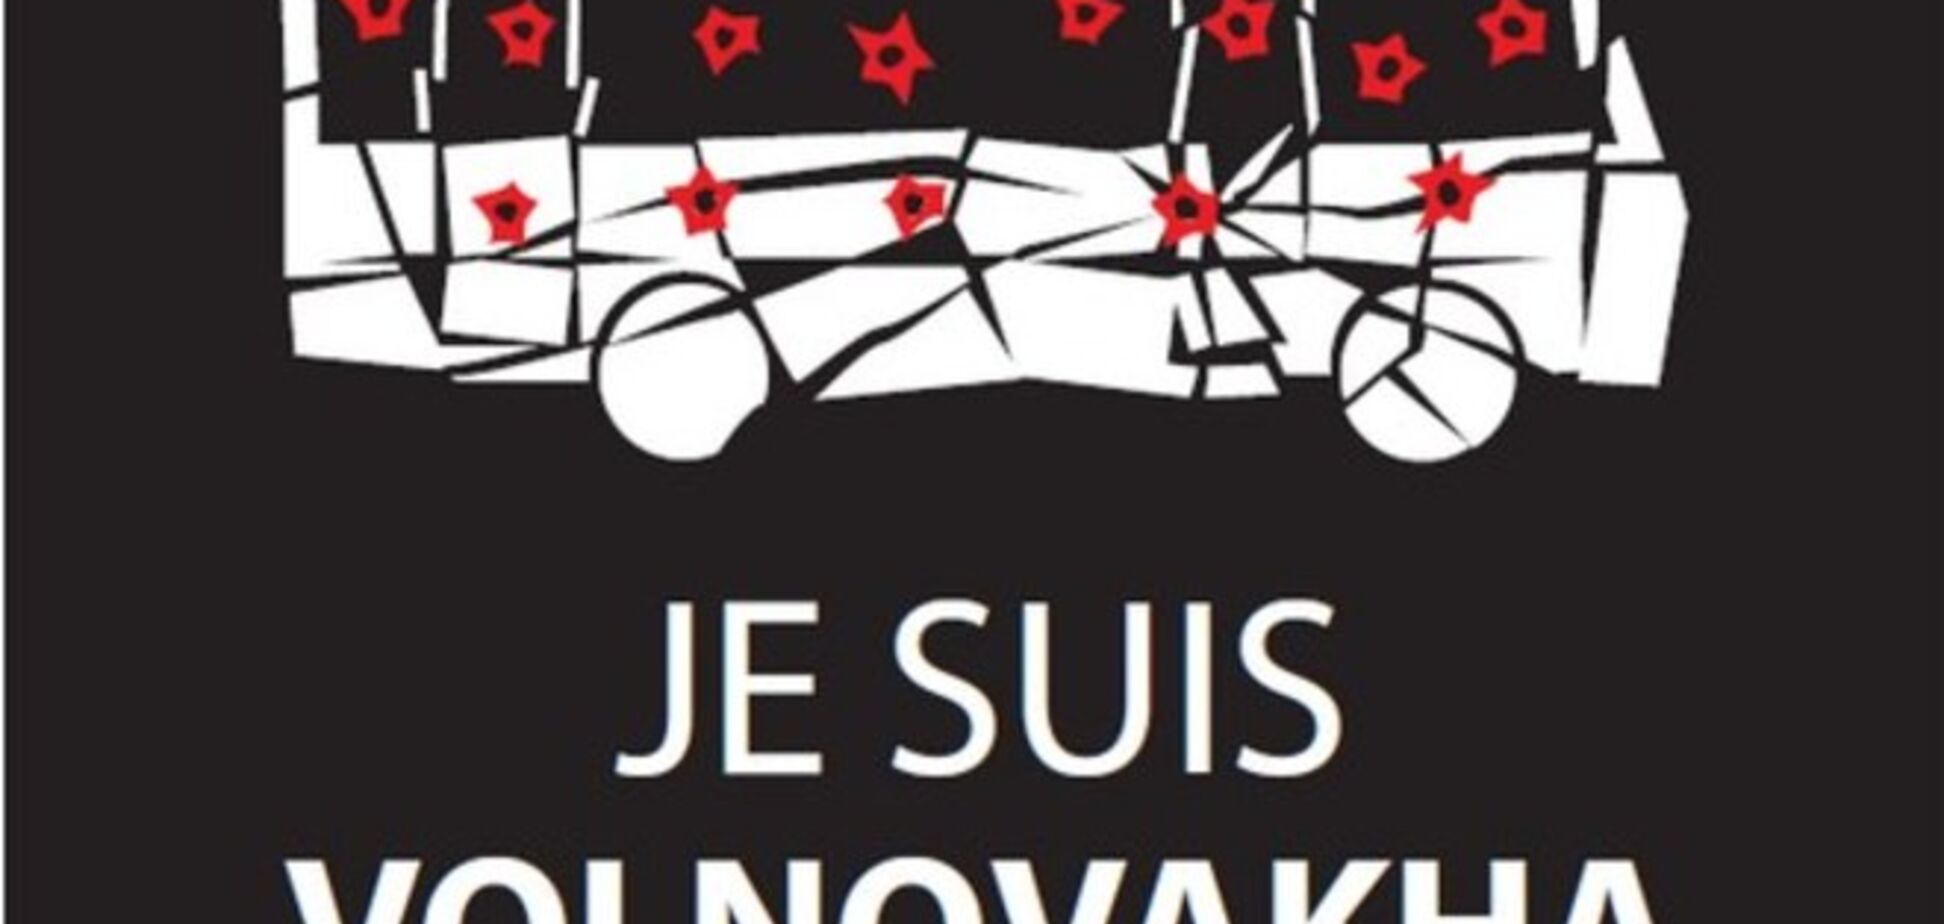 Порошенко в соцсетях призвал распространять #JeSuisVolnovaha